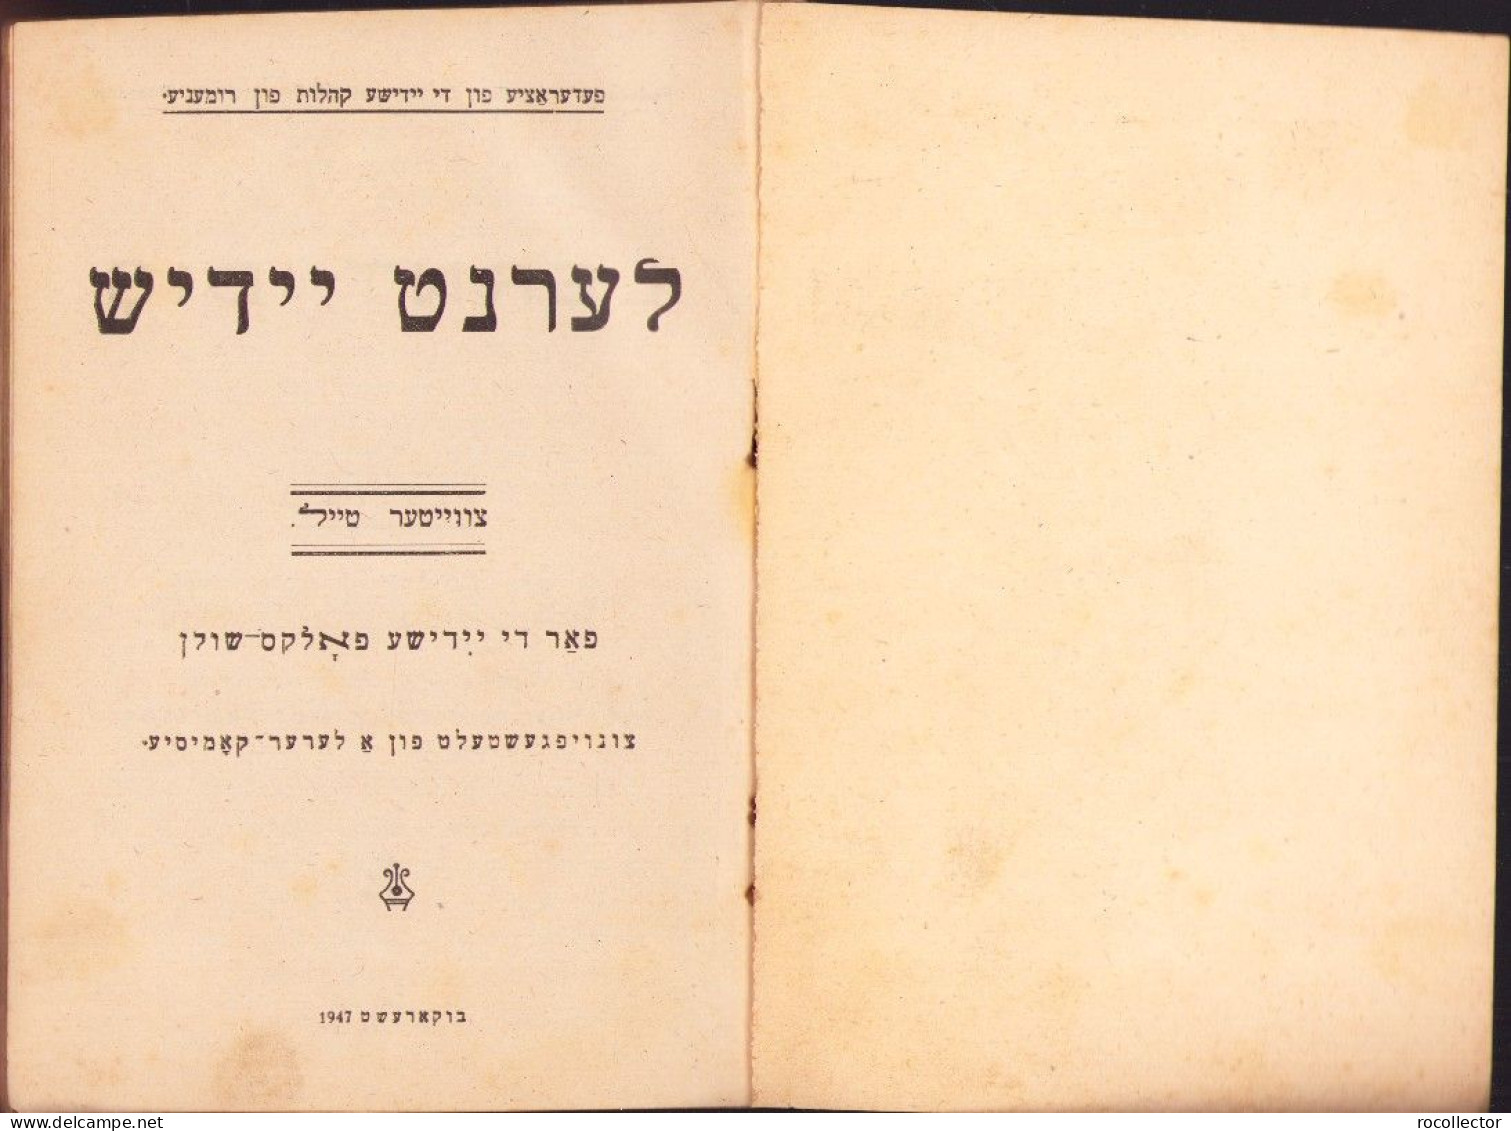 Lernt Idiș, Manual Pentru școlile Evreești, Partea II, București, 1947 731SPN - Livres Anciens